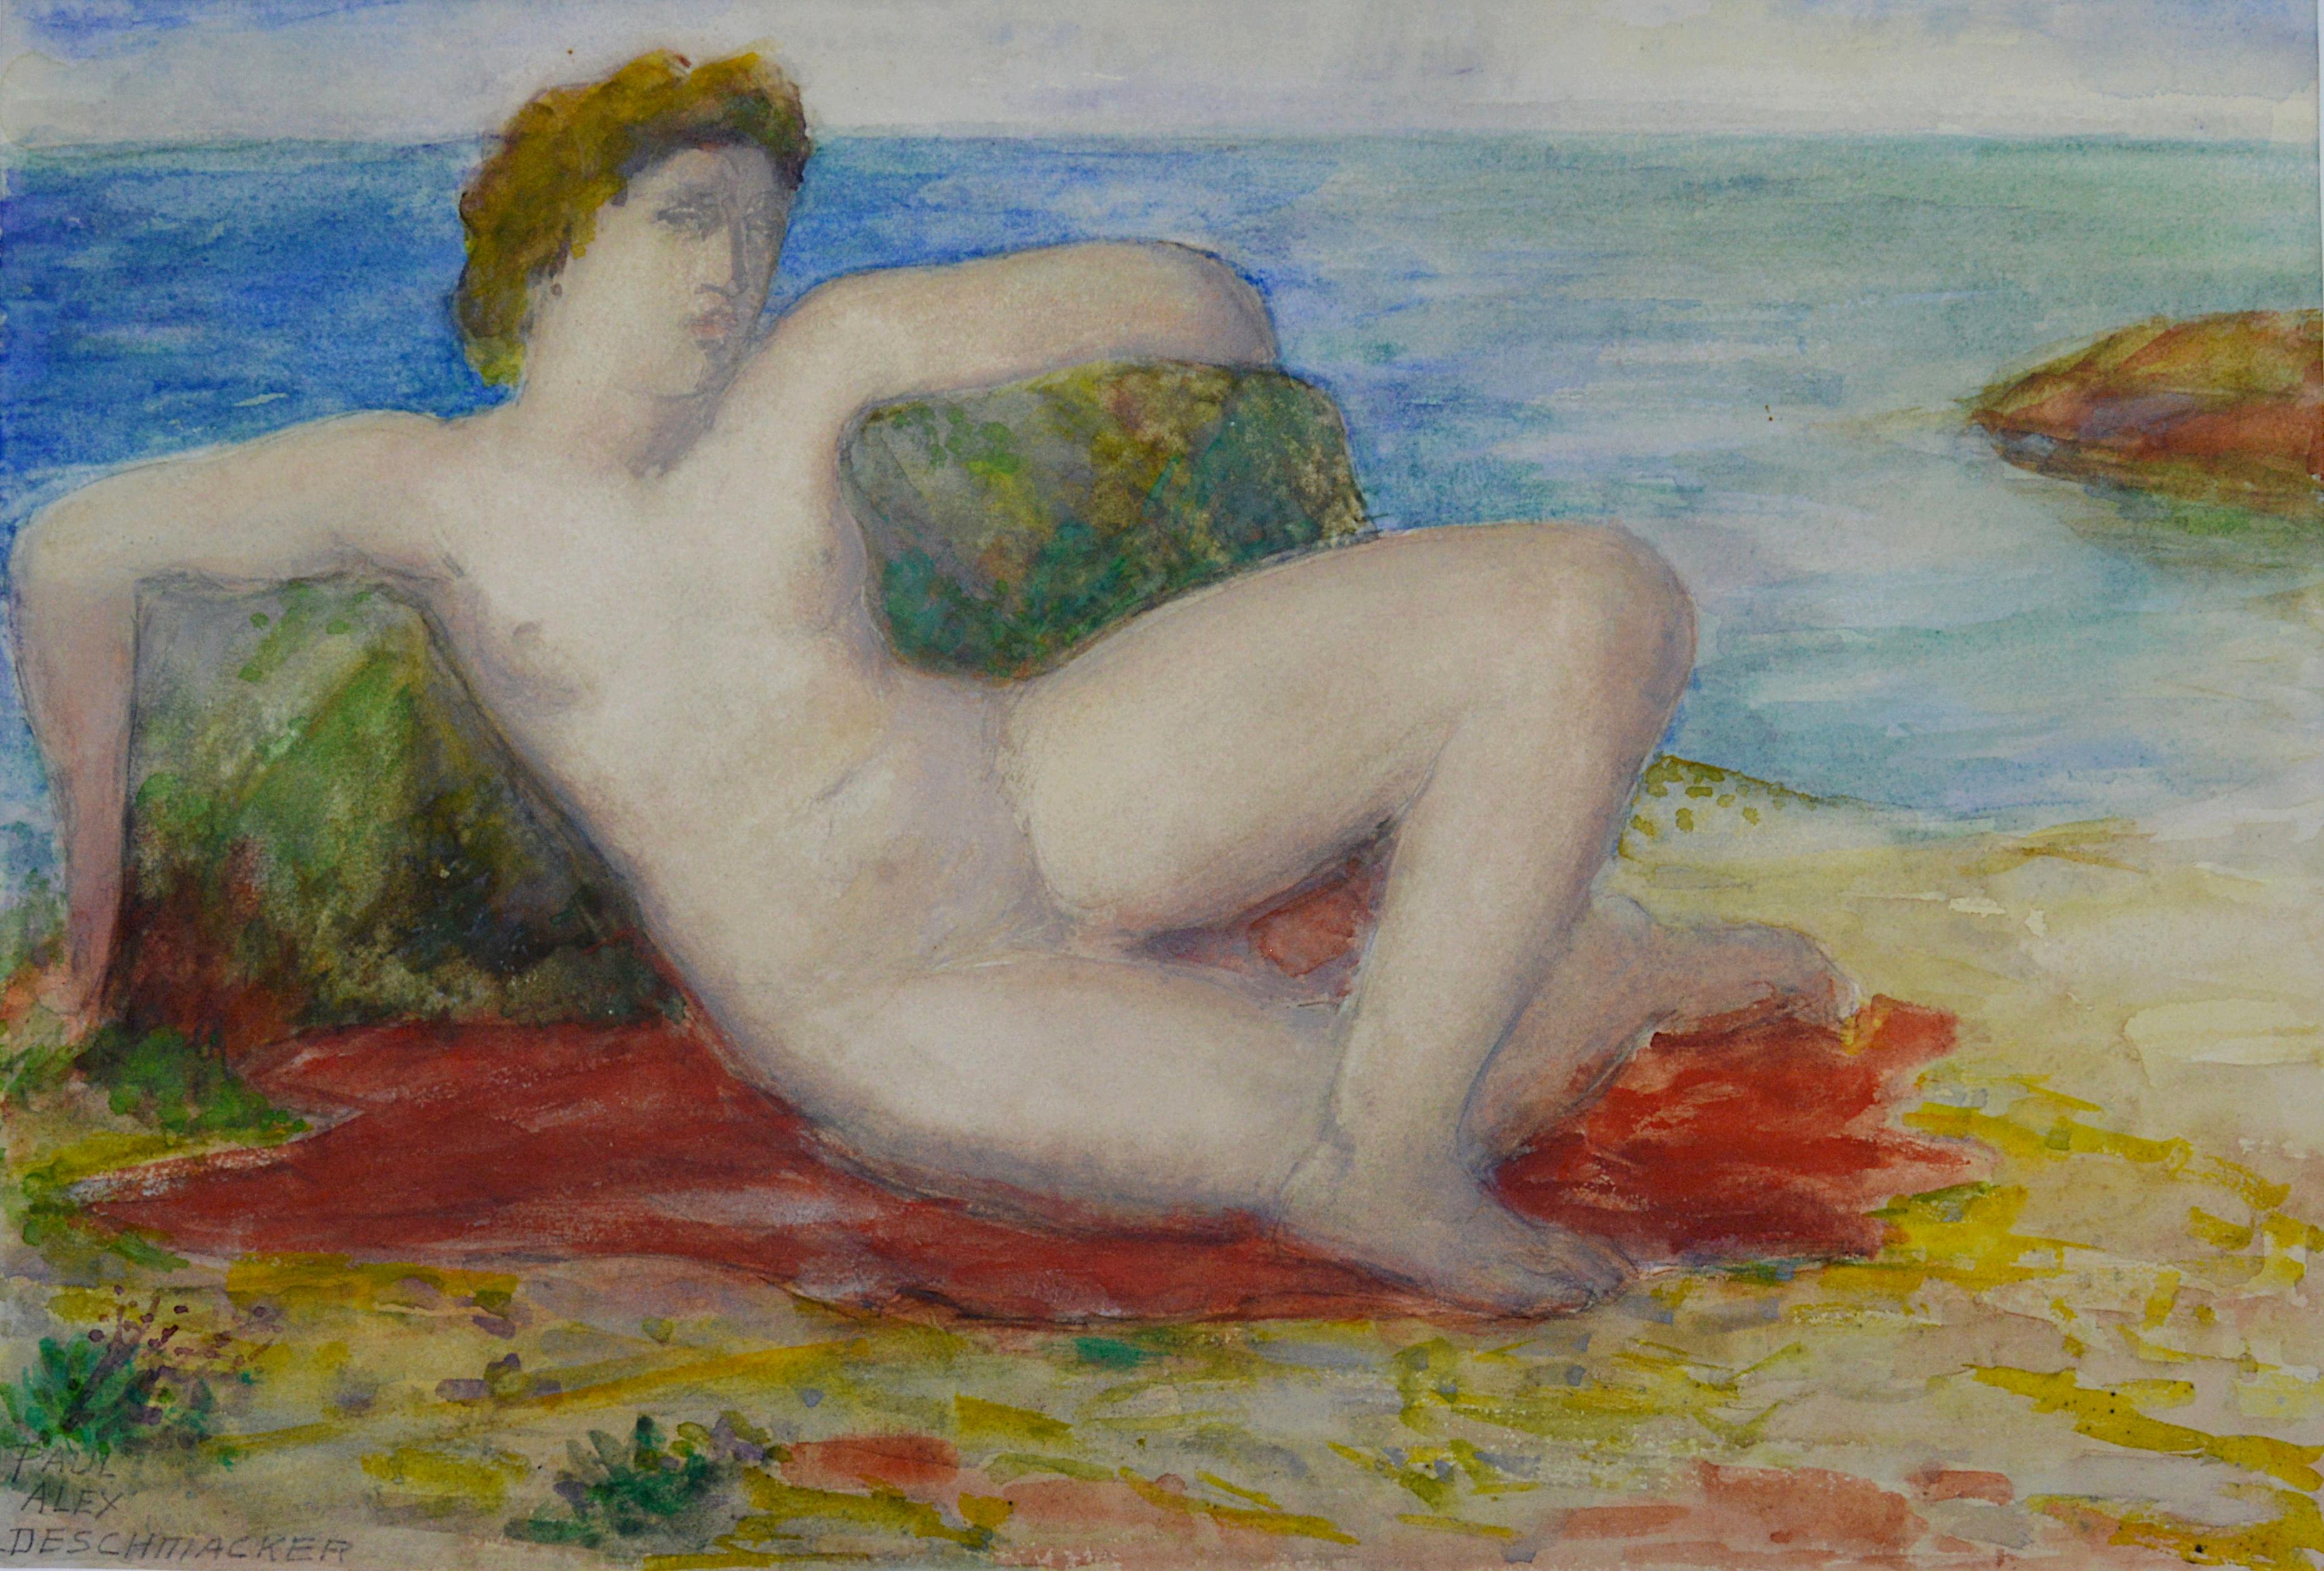 Deschmacker, Jeune femme allongée au bord de la mer, aquarelle